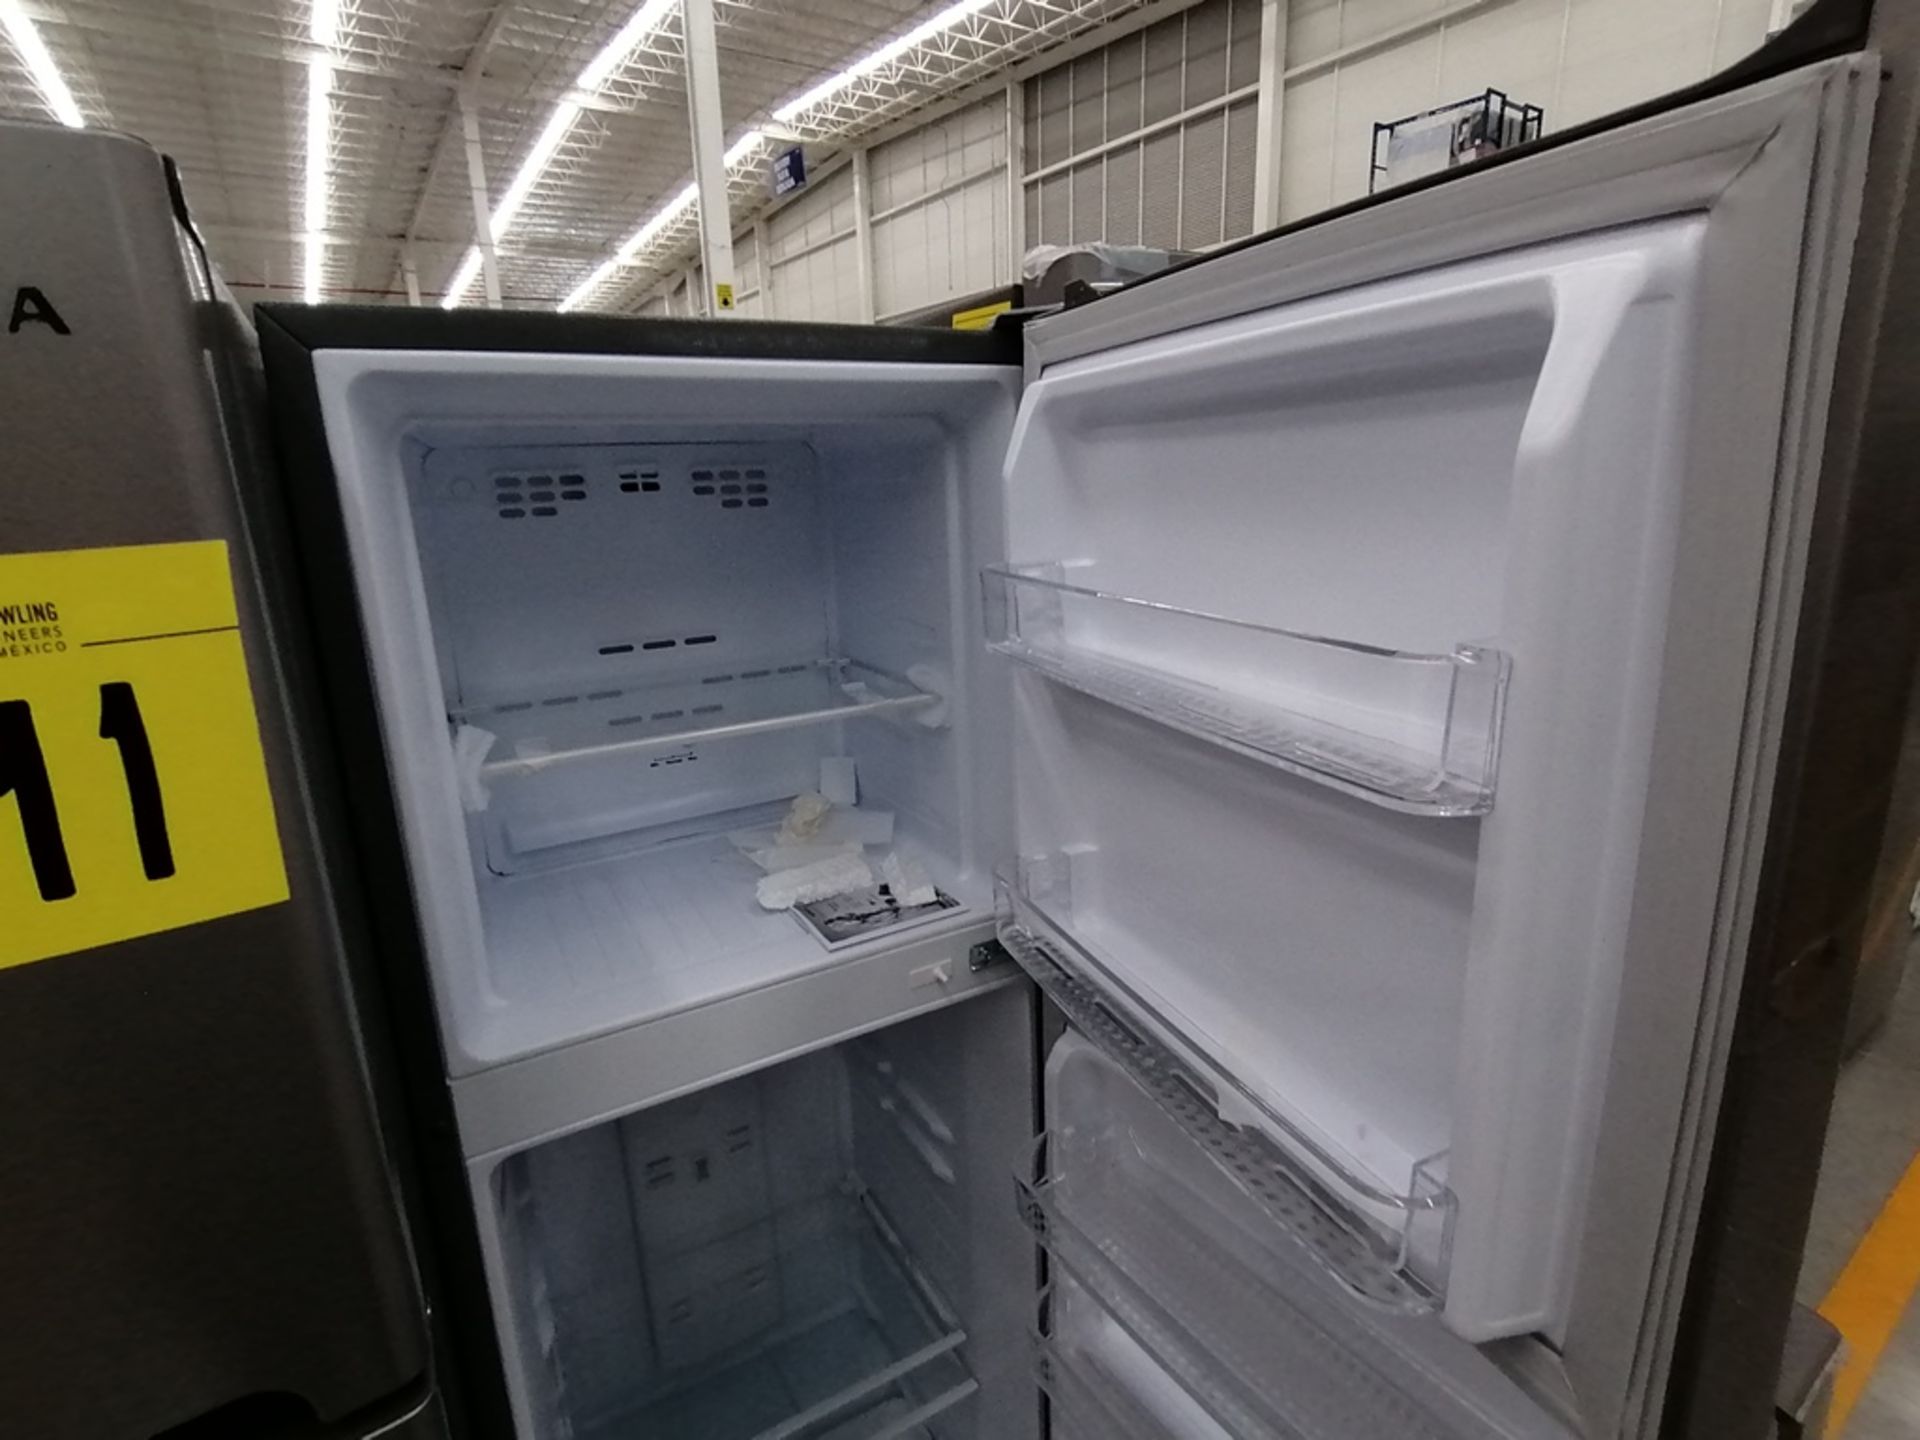 Lote de 2 Refrigeradores incluye: 1 Refrigerador, Marca Winia, Modelo DFR25120GN, Serie MR219N11624 - Image 6 of 15